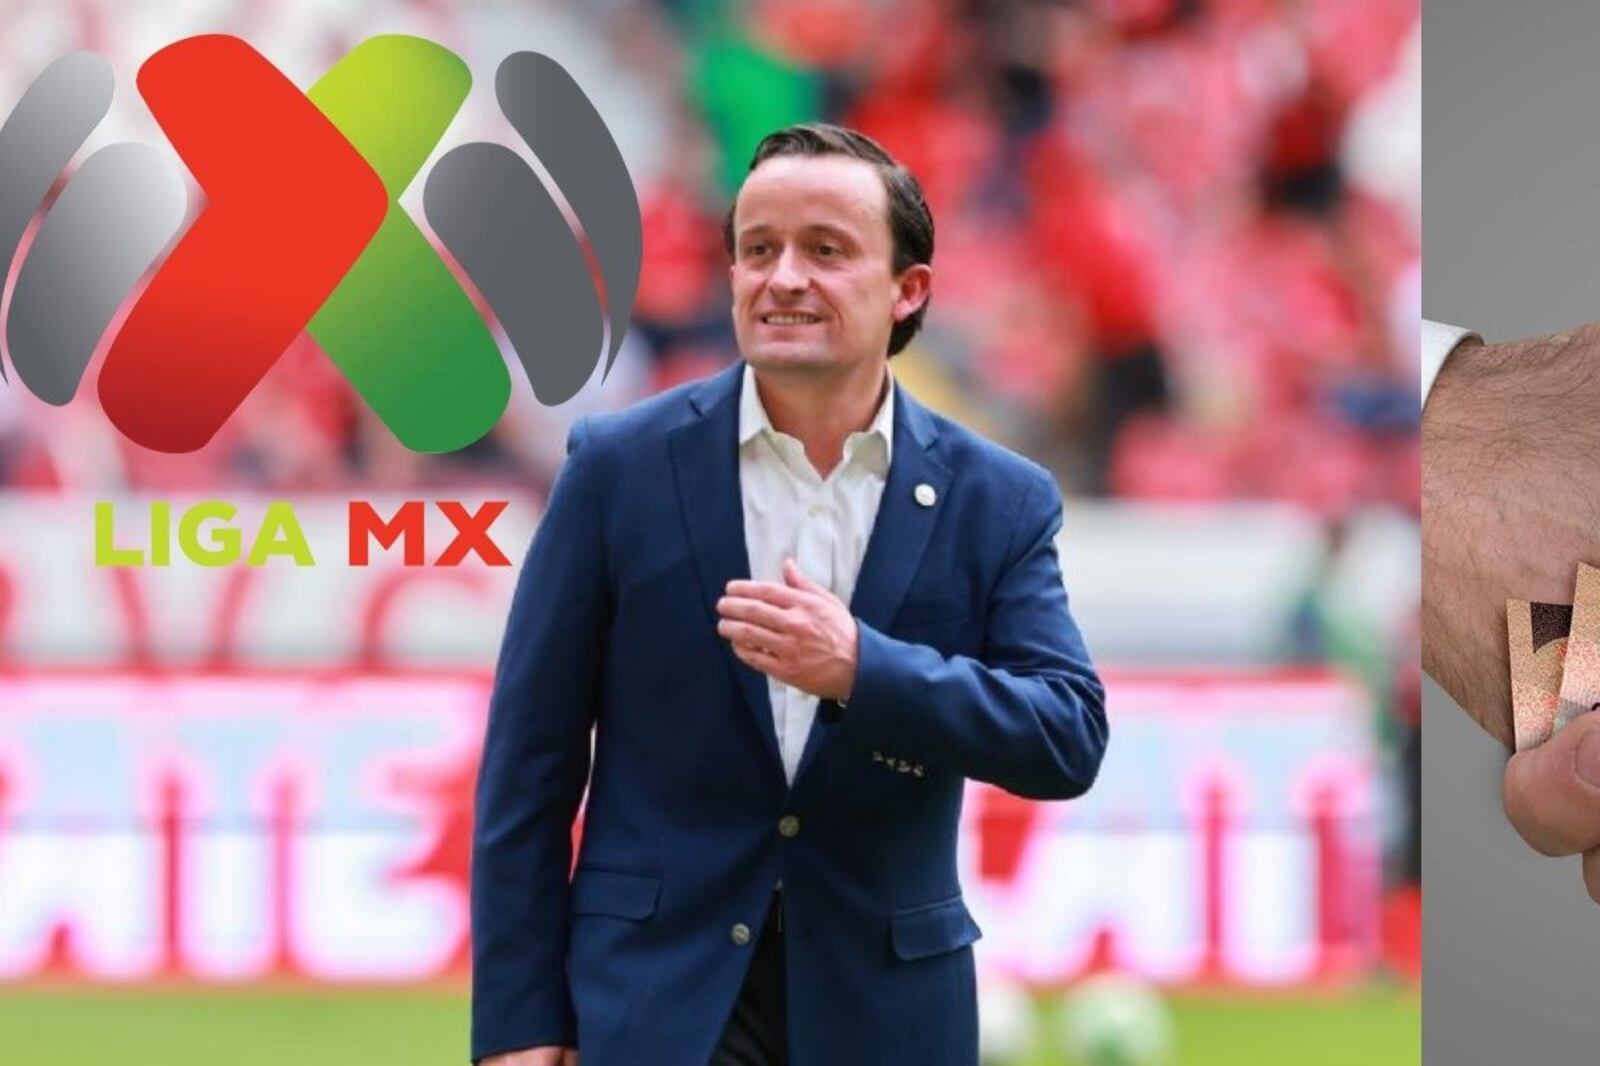 Destapan cómo Mikel Arriola prefiere el negocio a que la Liga MX crezca